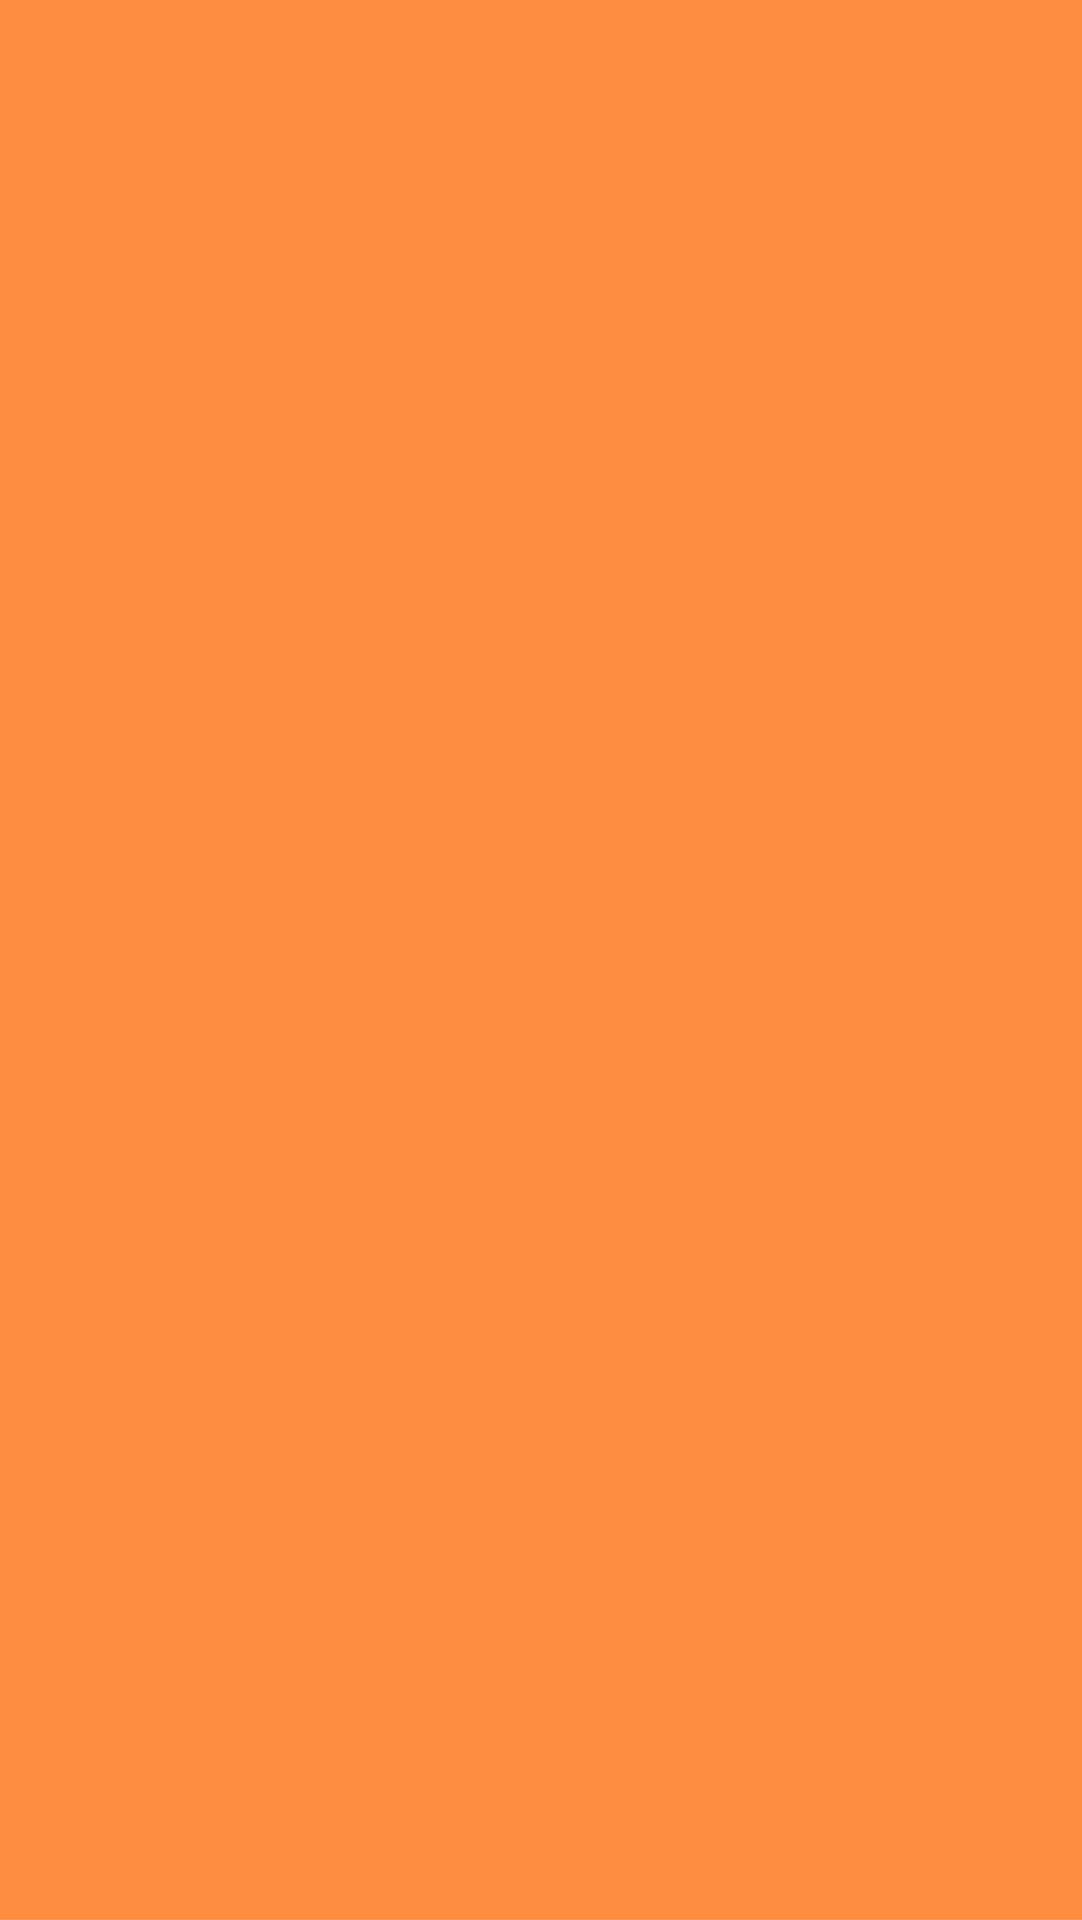 Solid Color Dark Orange Background